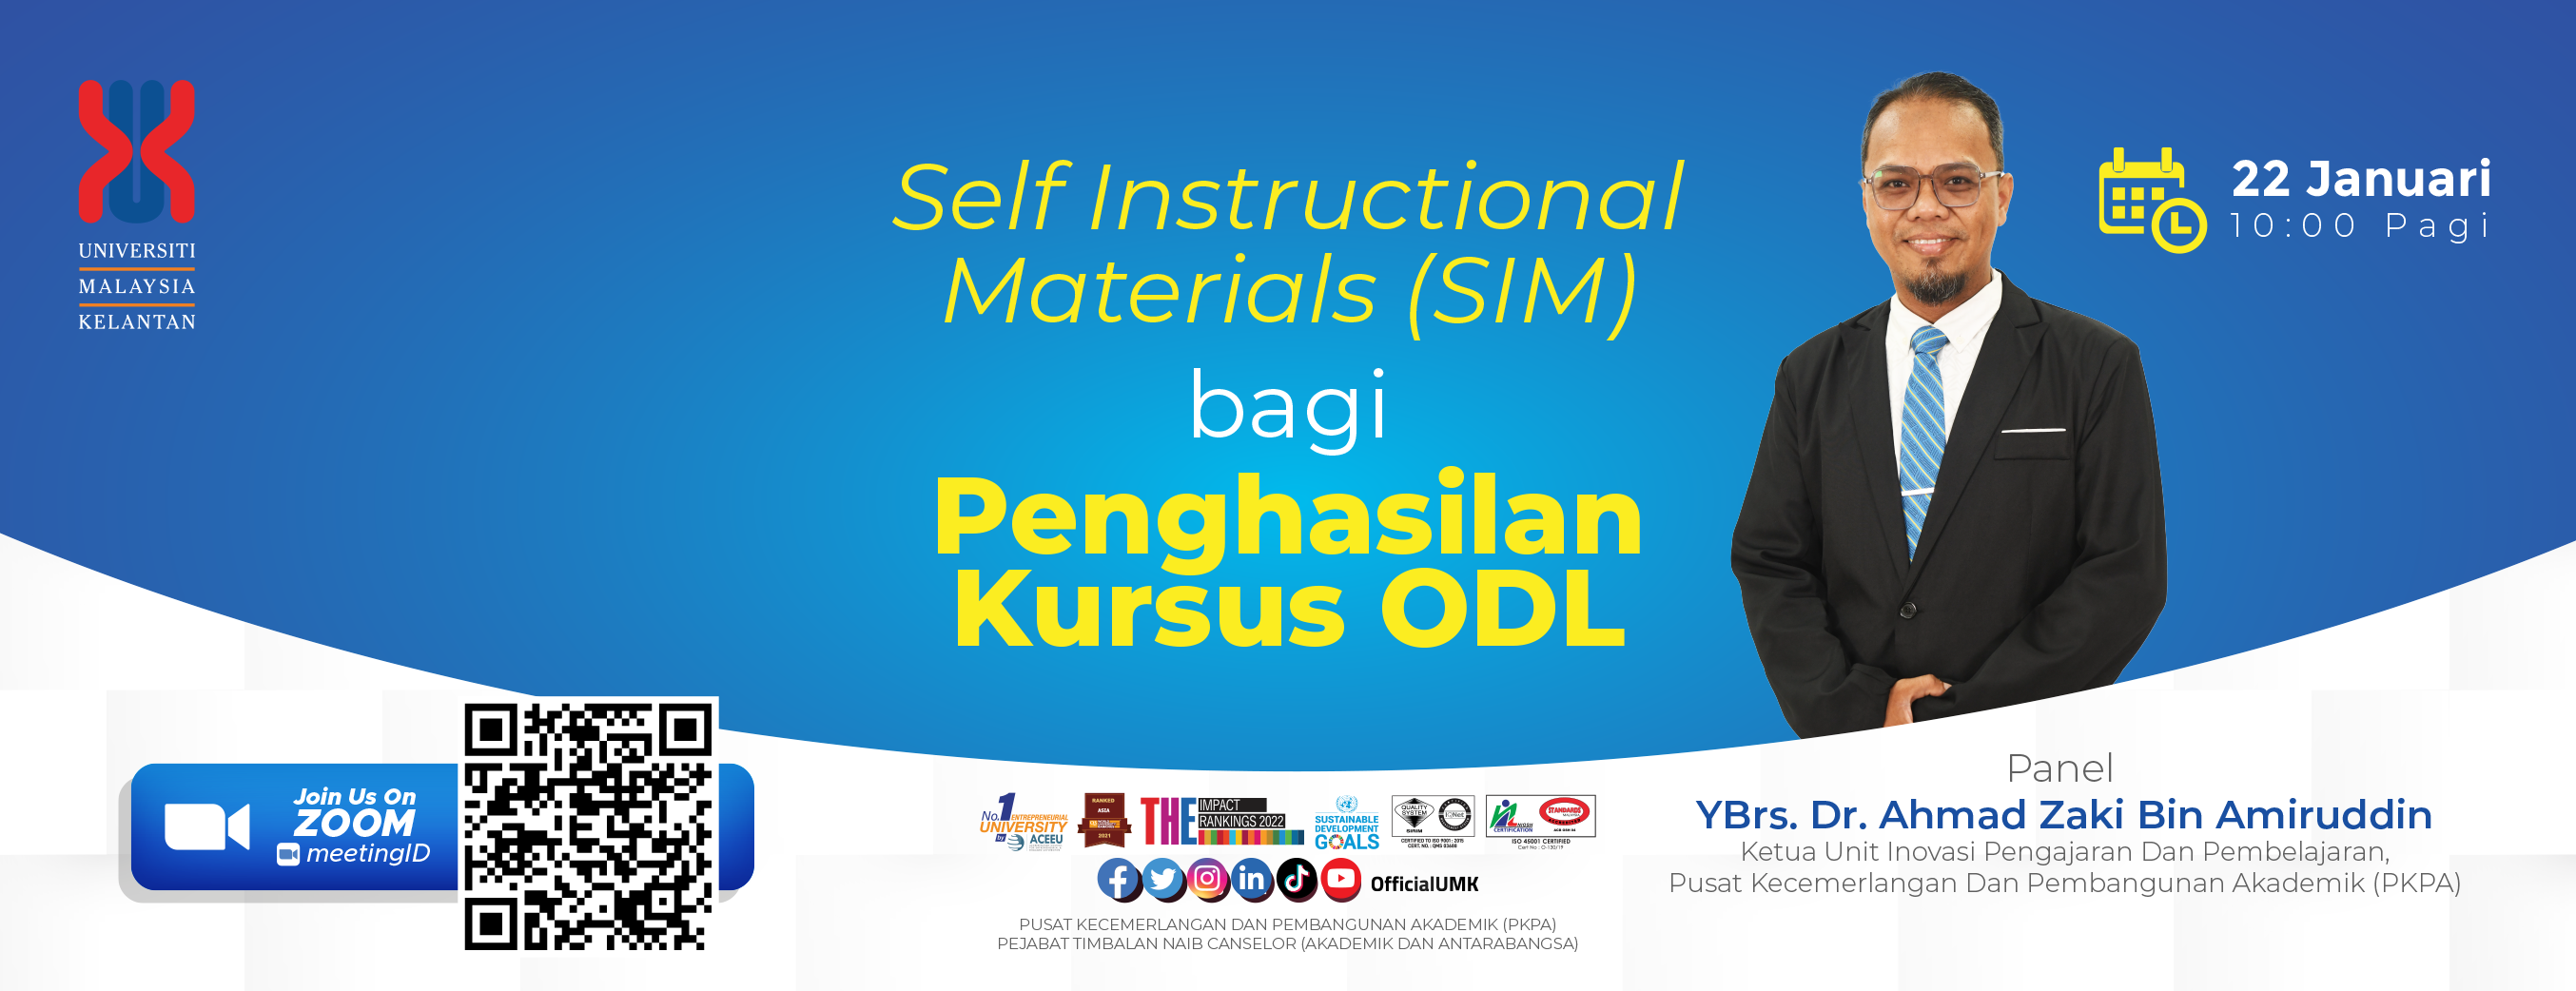 SELF INSTRUCTIONAL MATERIALS (SIM) BAGI PENGHASILAN KURSUS ODL UNIVERSITI MALAYSIA KELANTAN